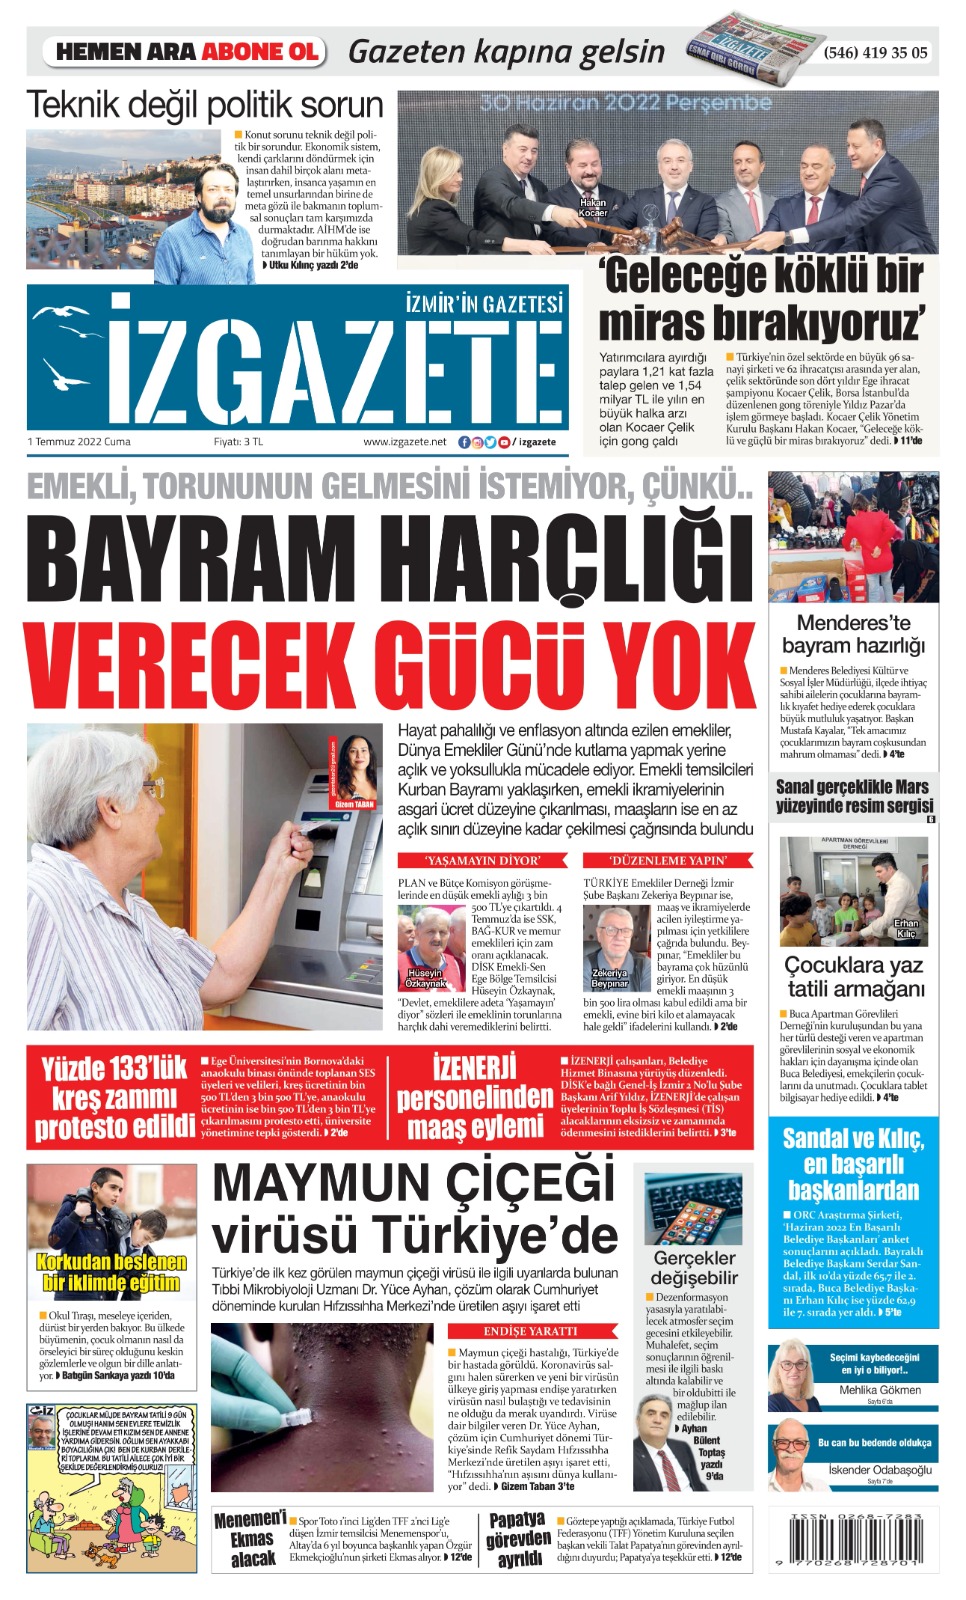 İz Gazete - İzmir'in Gazetesi - 01.07.2022 Manşeti